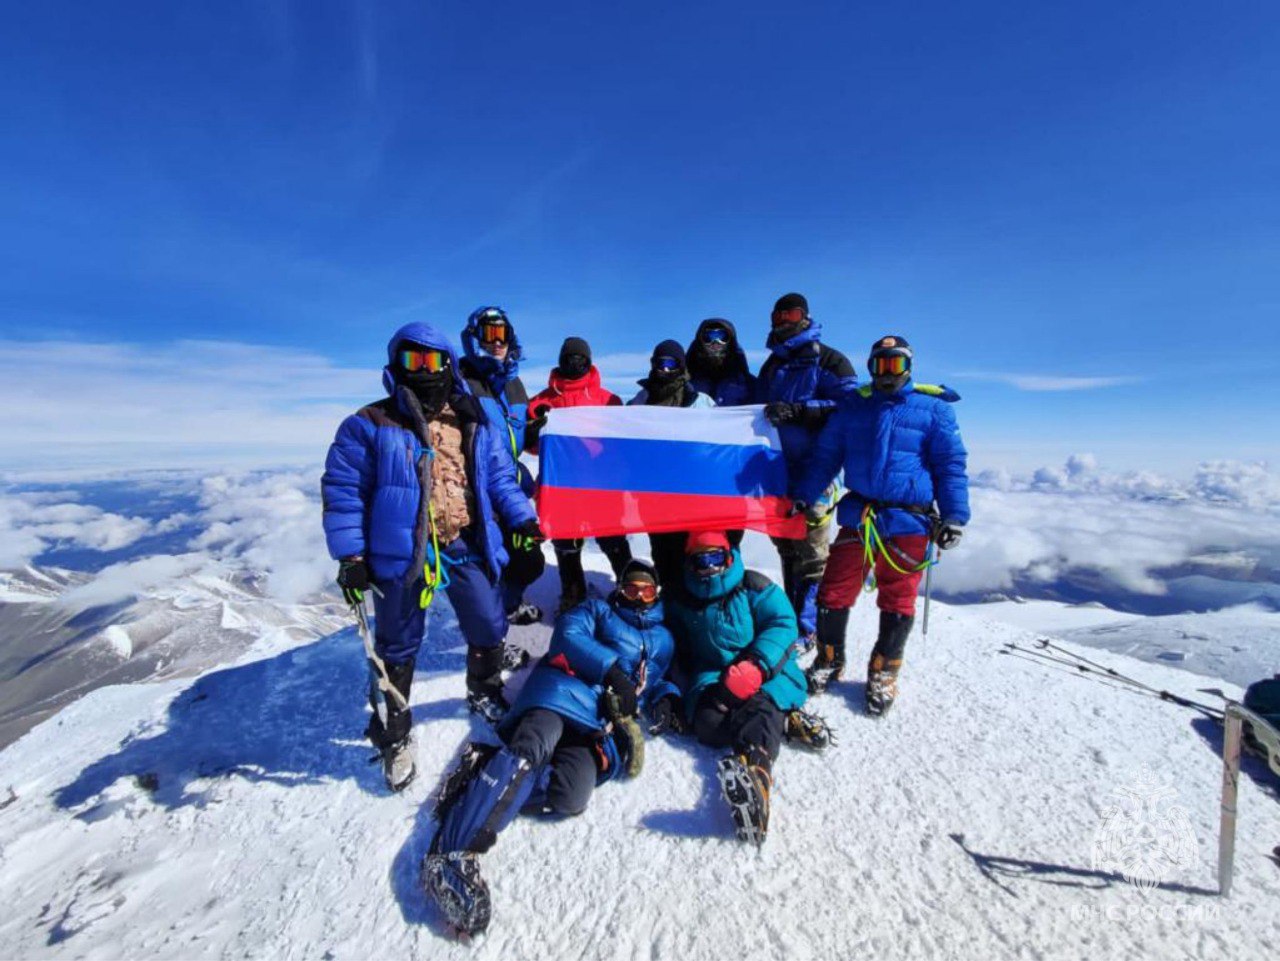 Флаг России подняли на Эльбрус. Фото © Telegram / МЧС КБР